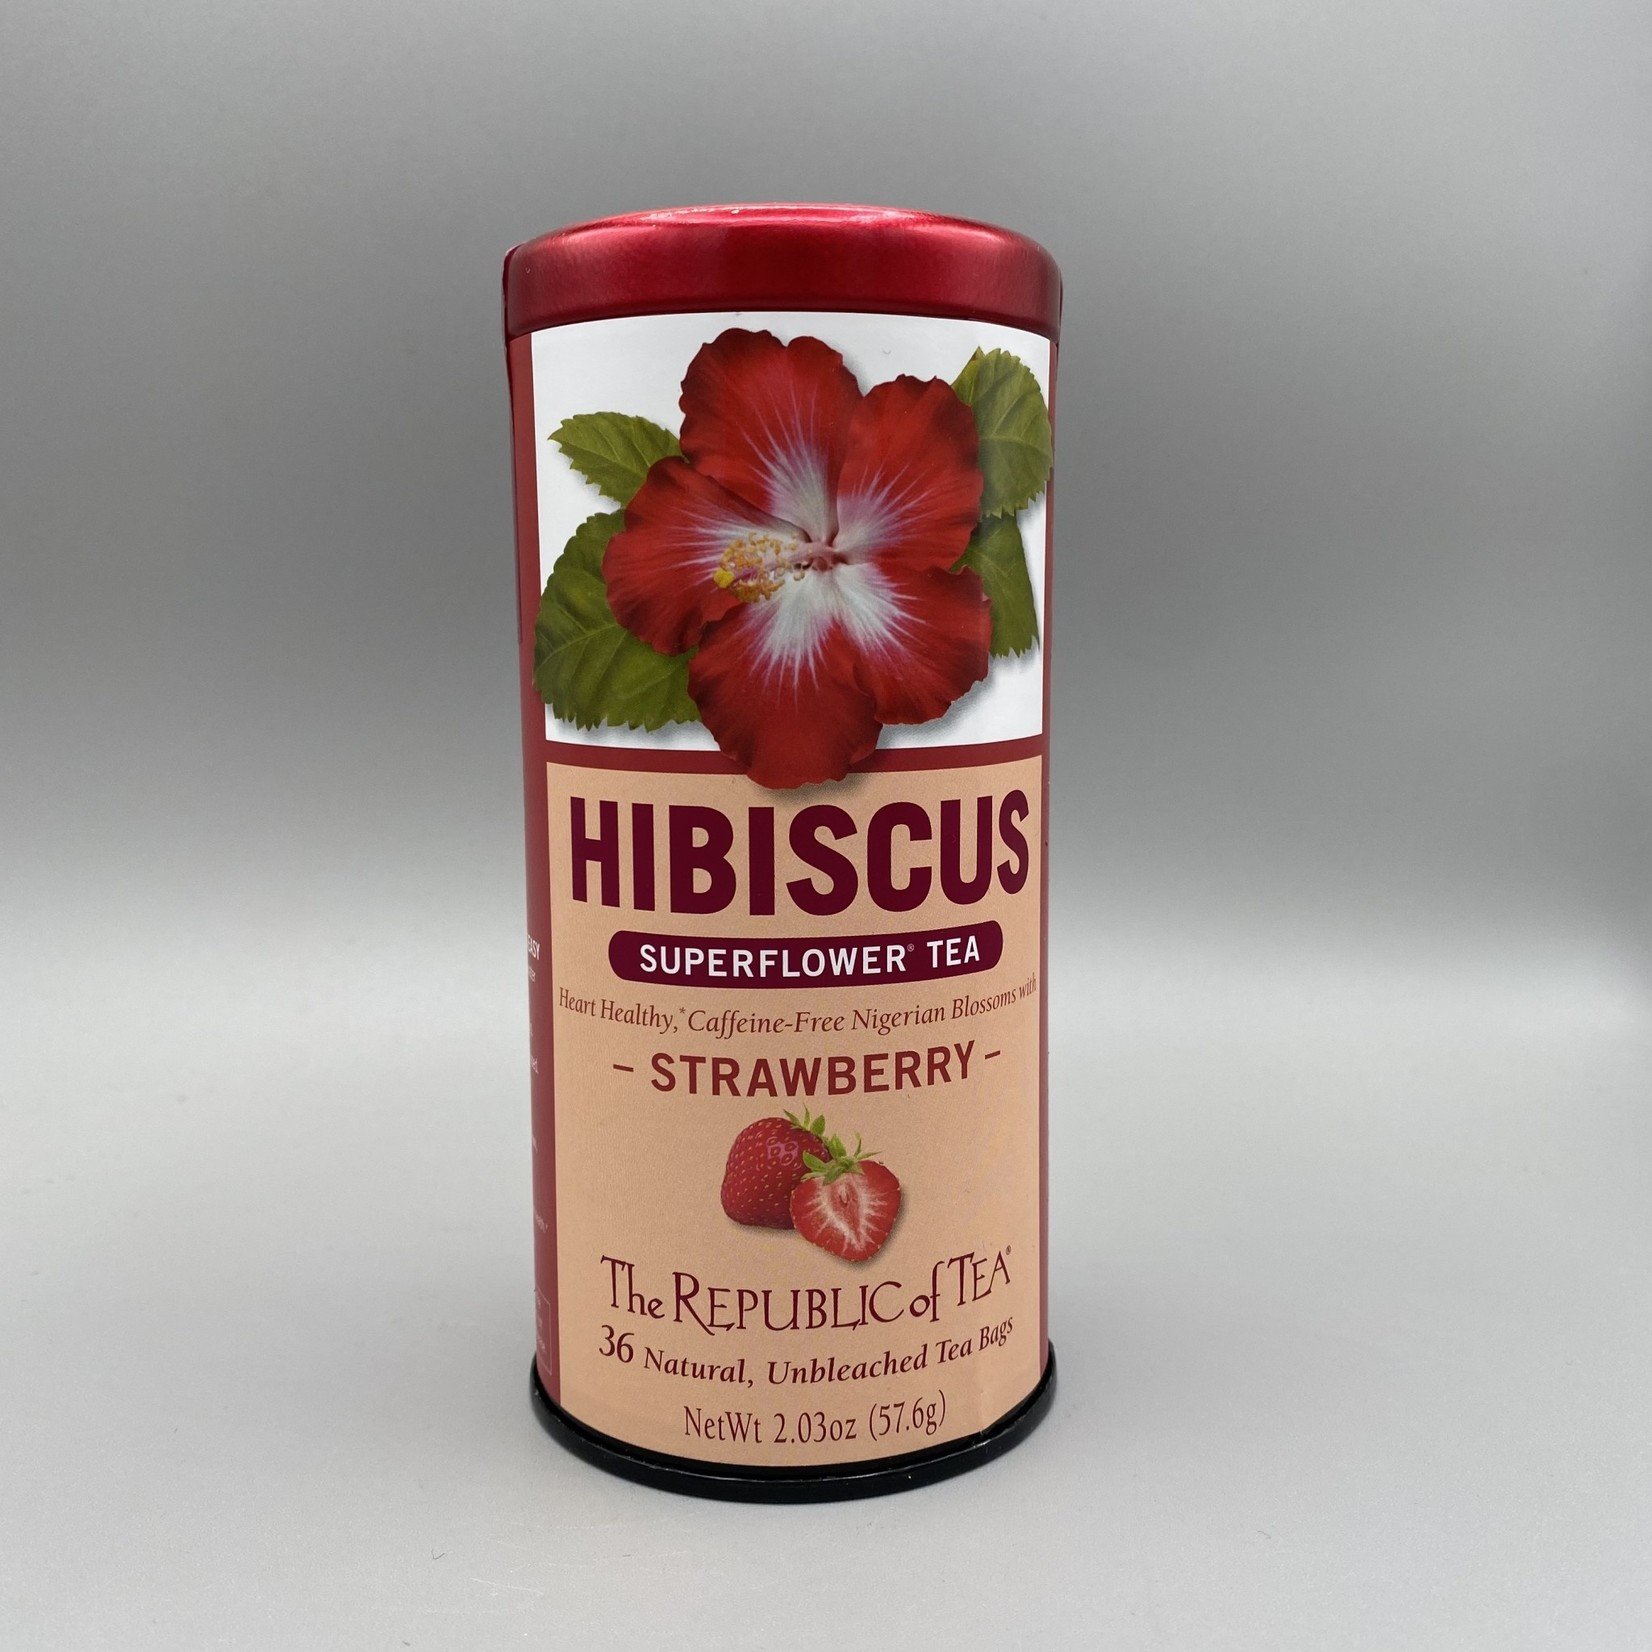 The Republic of Tea The Republic Of Tea Strawberry Hibiscus Super-Flower Tea (36 Bags)